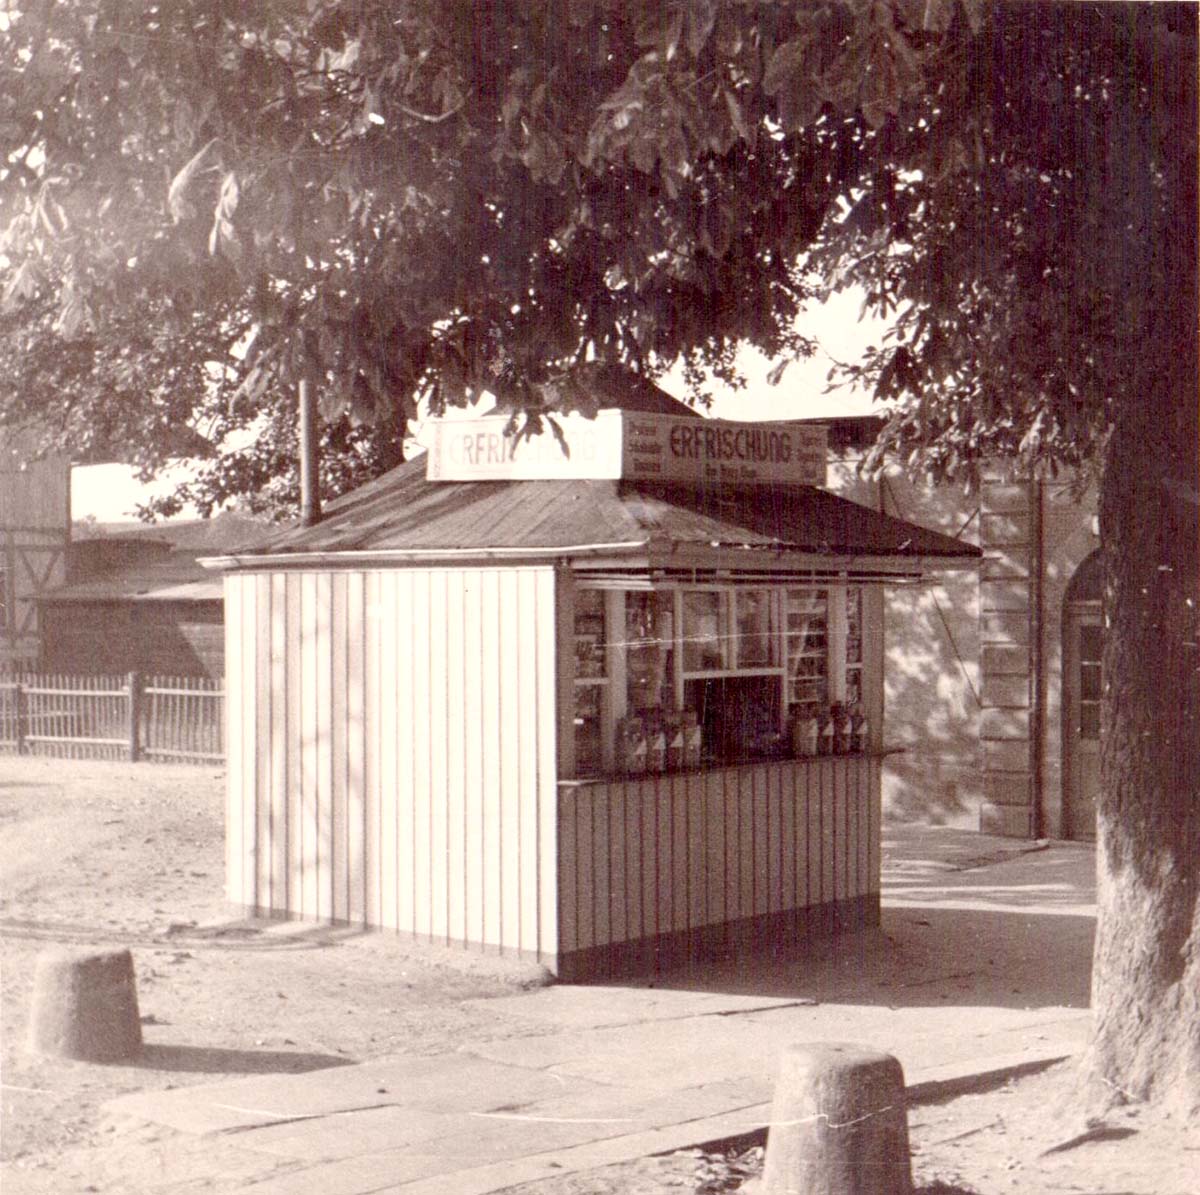 Hemsbach. Kiosk am Bahnhof von Auguste Döringer, 1935